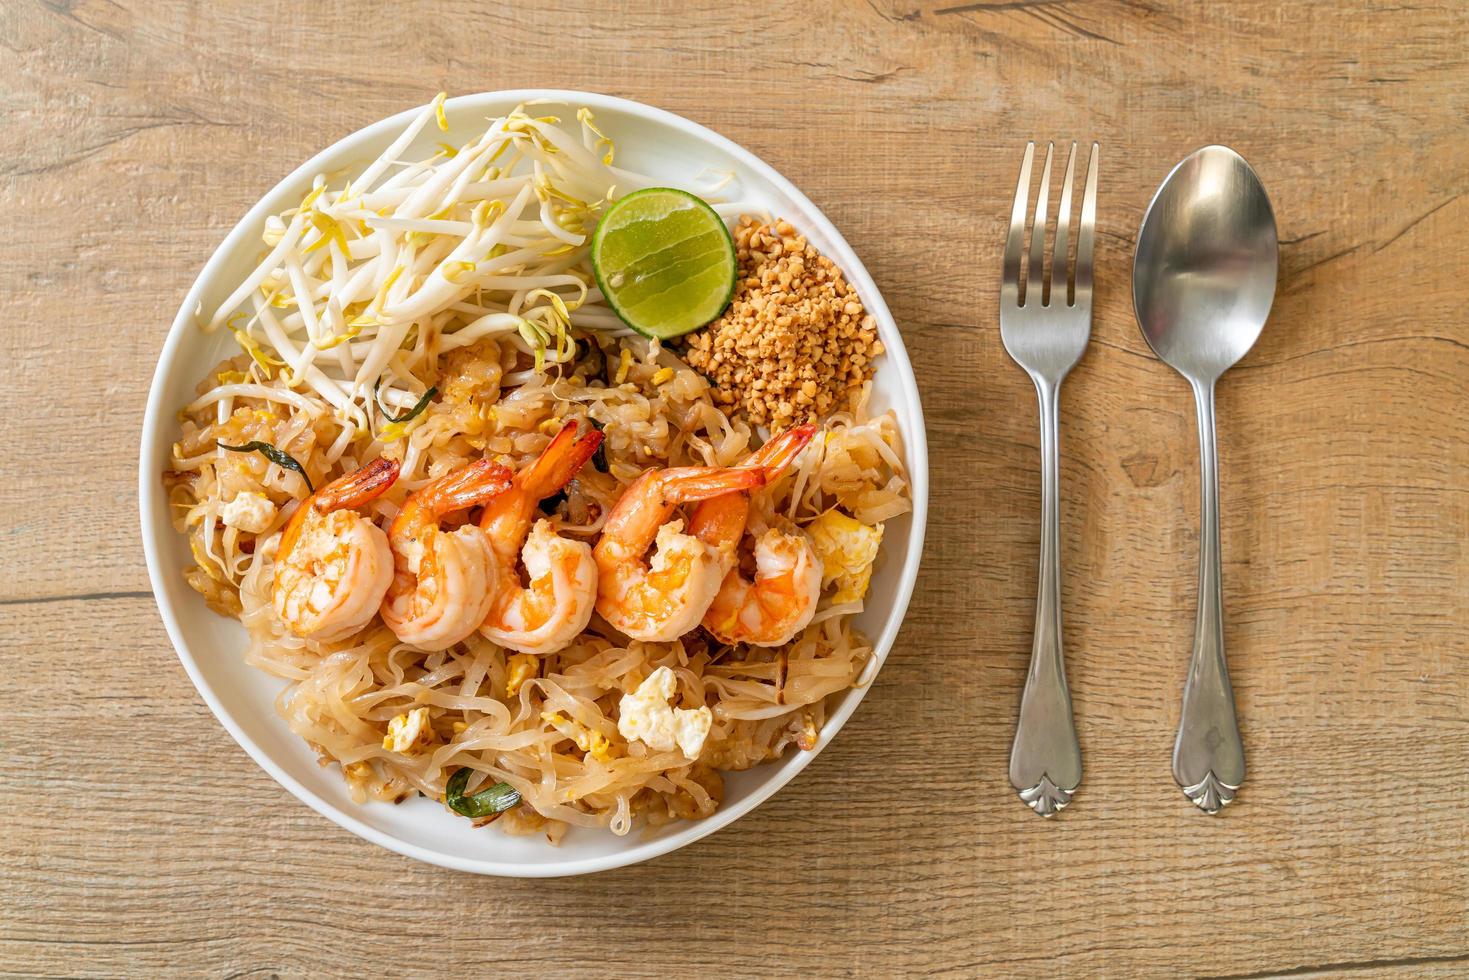 fideos salteados con camarones y brotes o pad thai - estilo de comida asiática foto